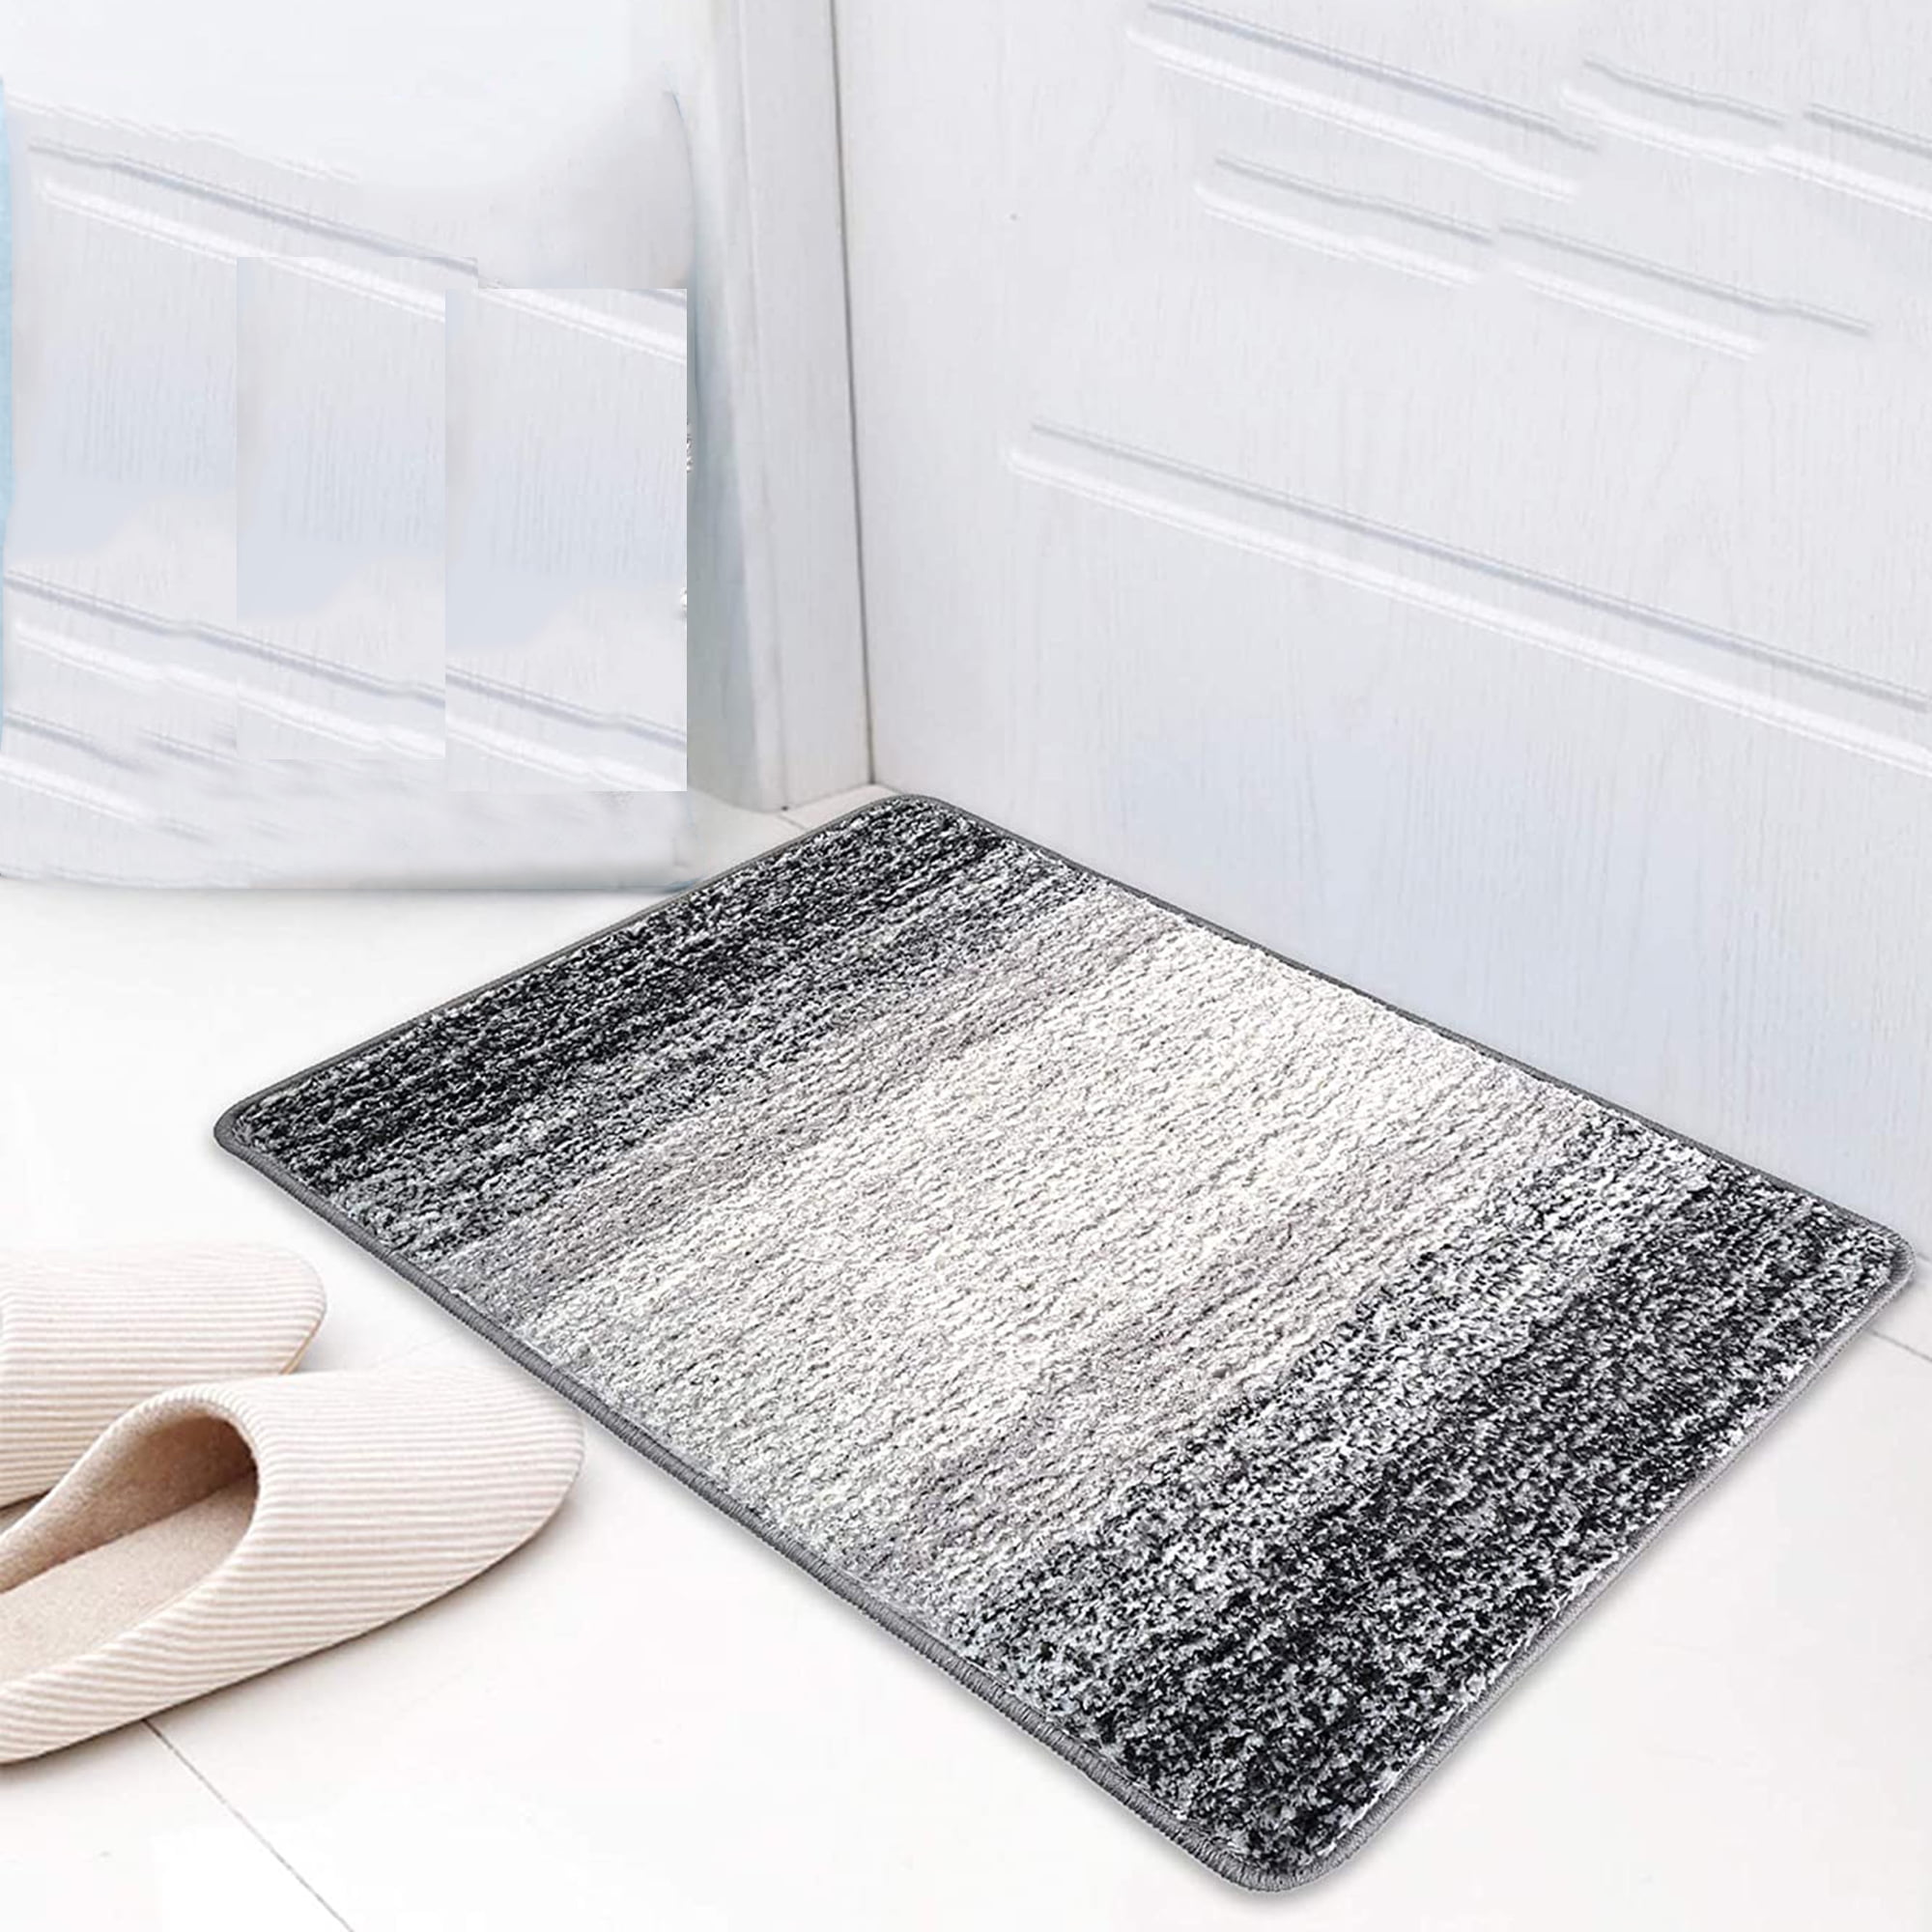 KMAT Door Mat Inside Outside,Anti-Slip Durable Rubber Doormat